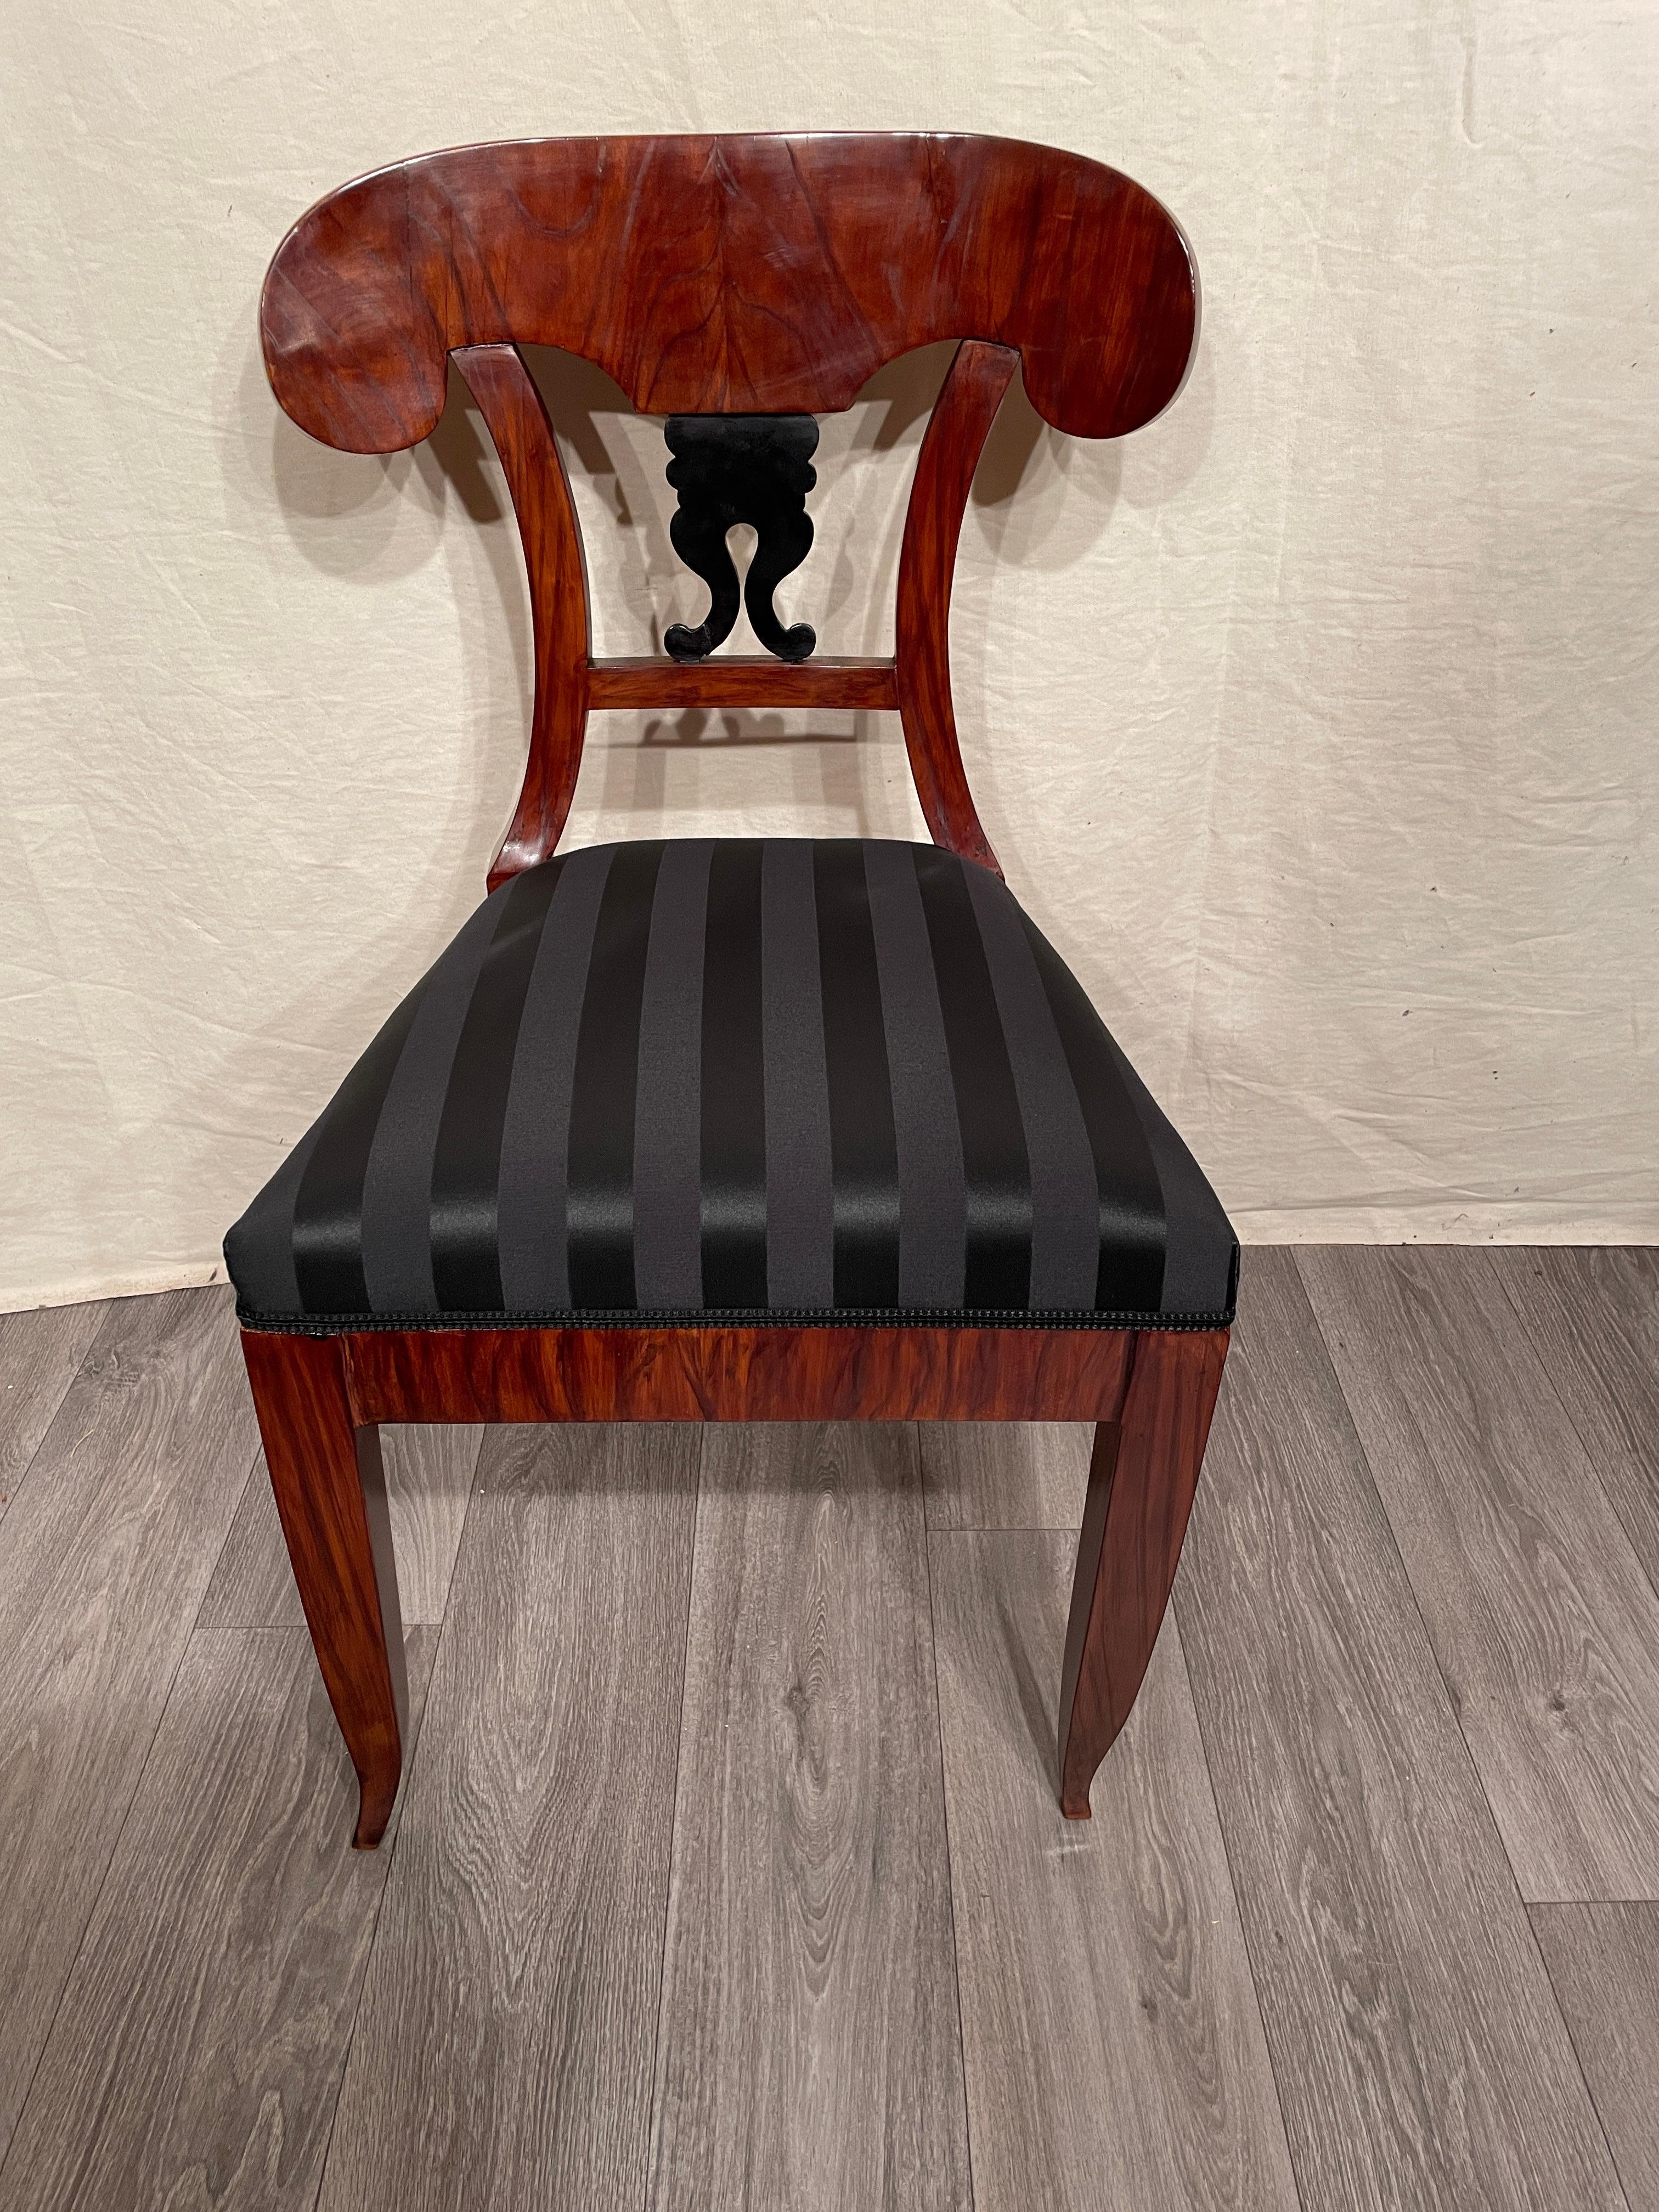 Chaise Biedermeier, Allemagne du Sud 1820. 
Un beau placage de noyer embellit cette chaise Biedermeier originale. Le dos est décoré d'un motif de volute ébonisé. La chaise a été professionnellement remise à neuf et polie à la gomme-laque. Il est